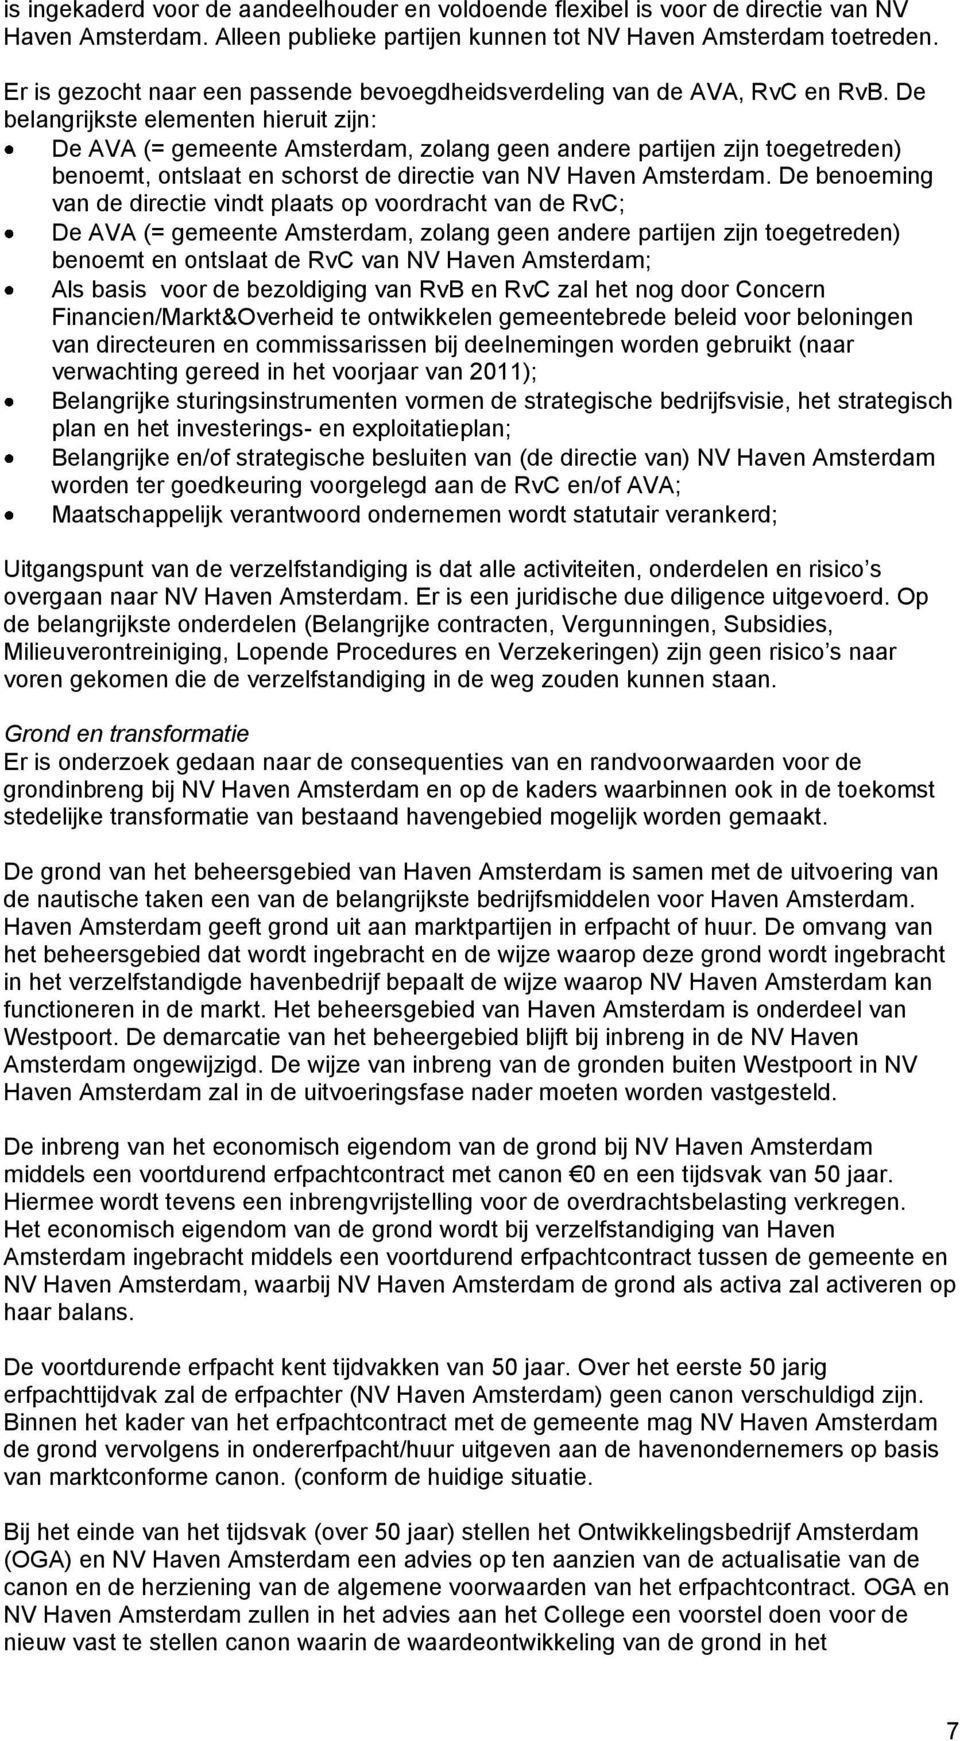 De belangrijkste elementen hieruit zijn: De AVA (= gemeente Amsterdam, zolang geen andere partijen zijn toegetreden) benoemt, ontslaat en schorst de directie van NV Haven Amsterdam.